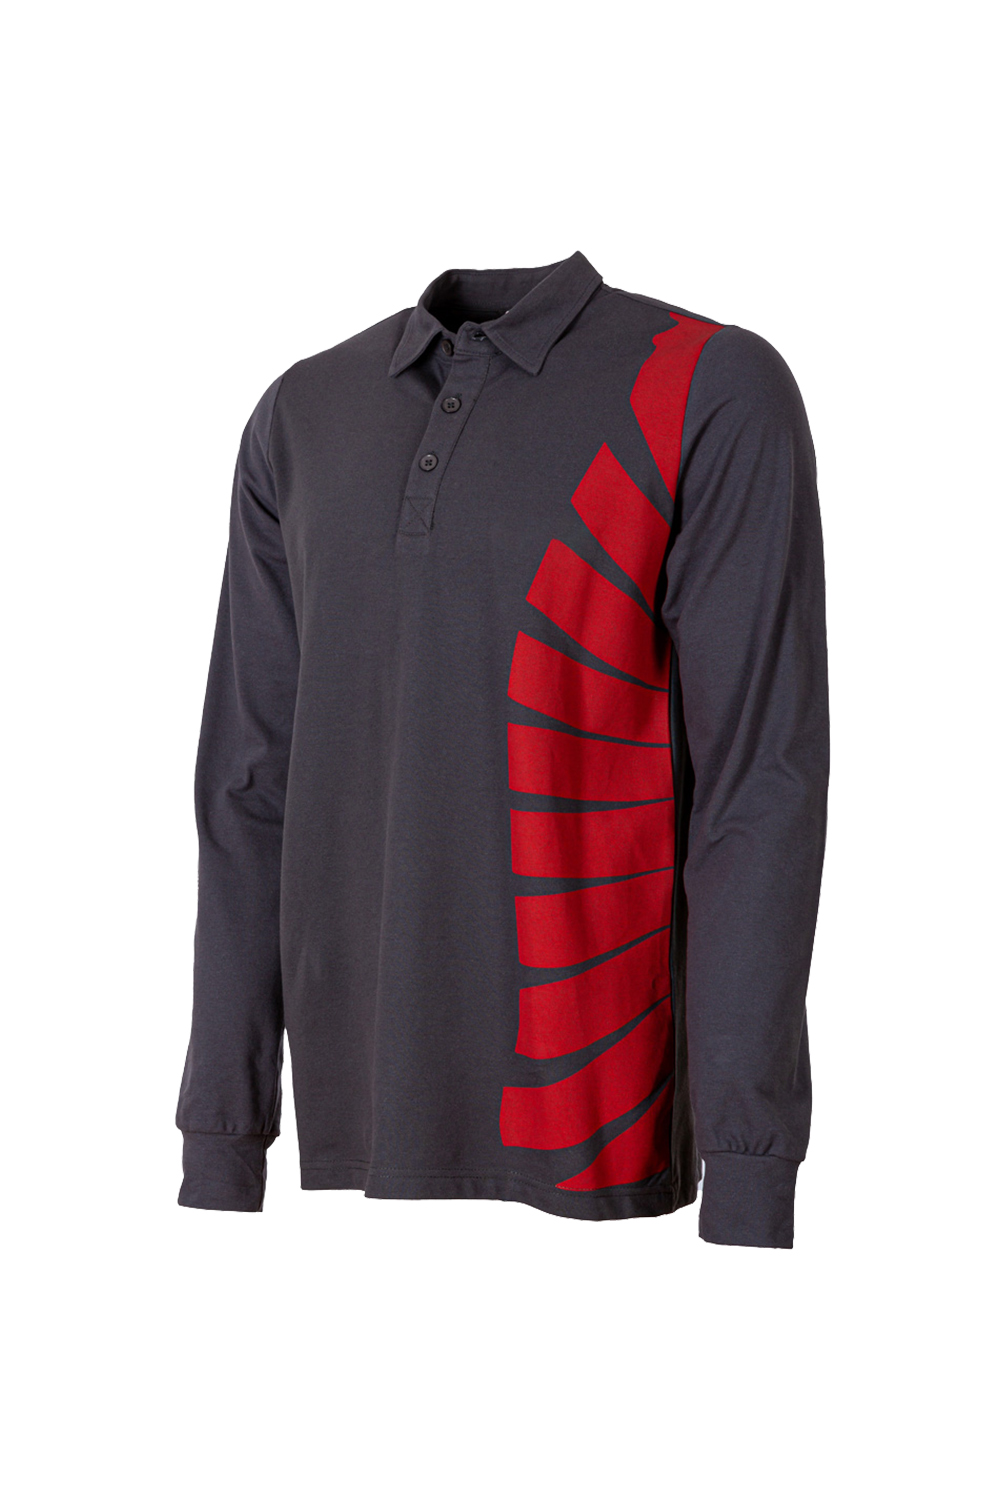 Polo Collar Sweatshirt / Polo Collar Sweatshirt / Workwear